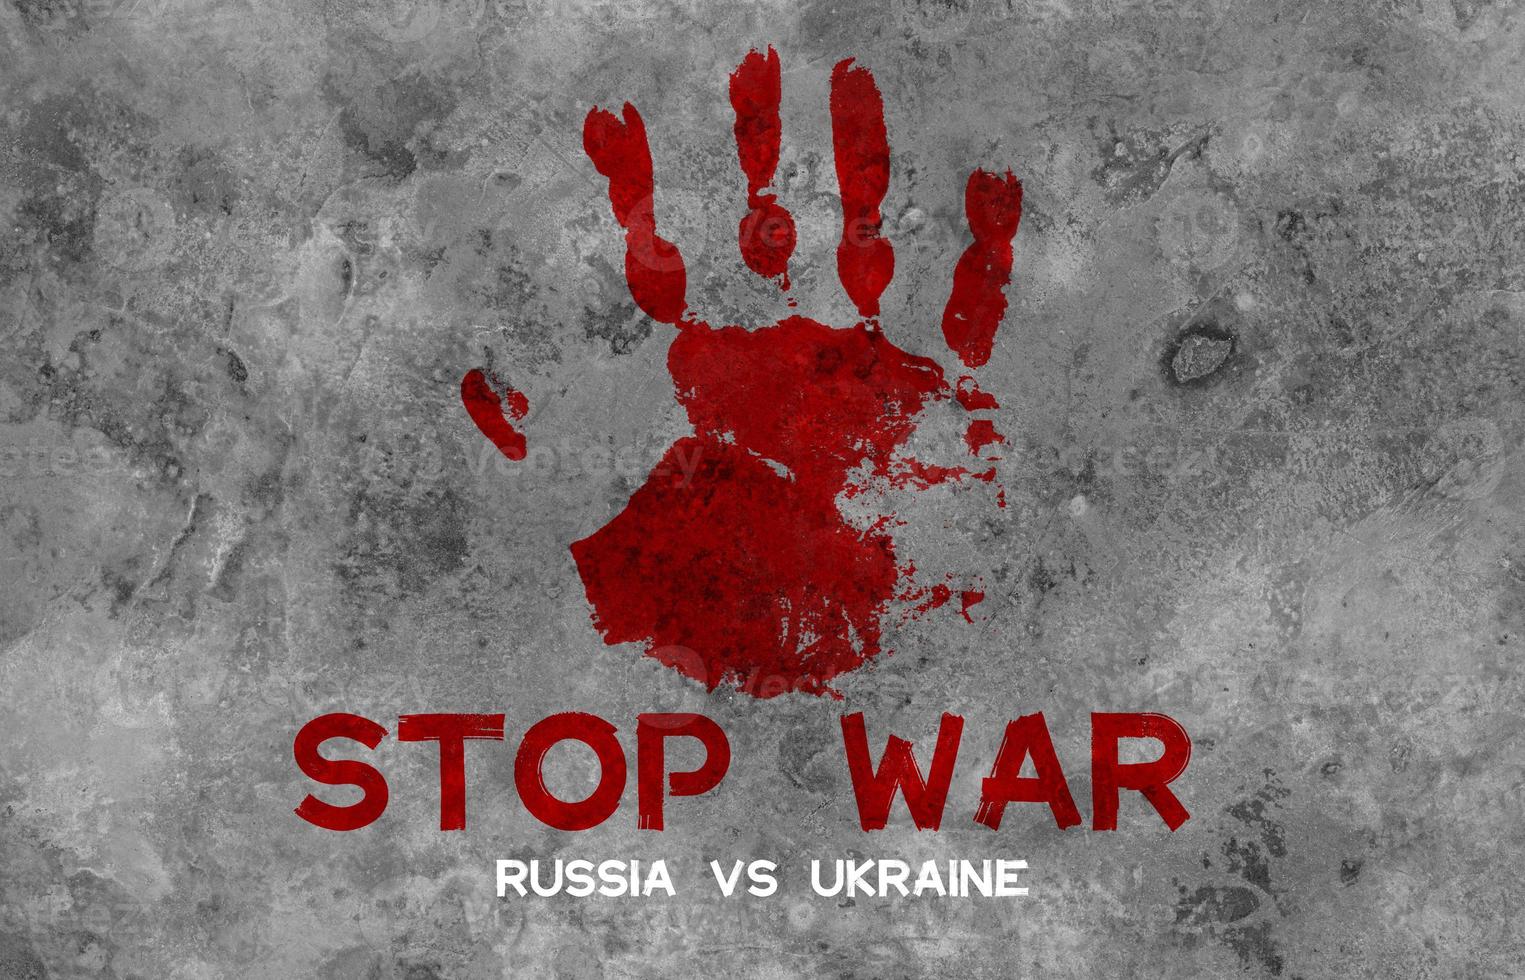 arrêter la guerre russie contre ukraine, guerre ukraine et russie photo